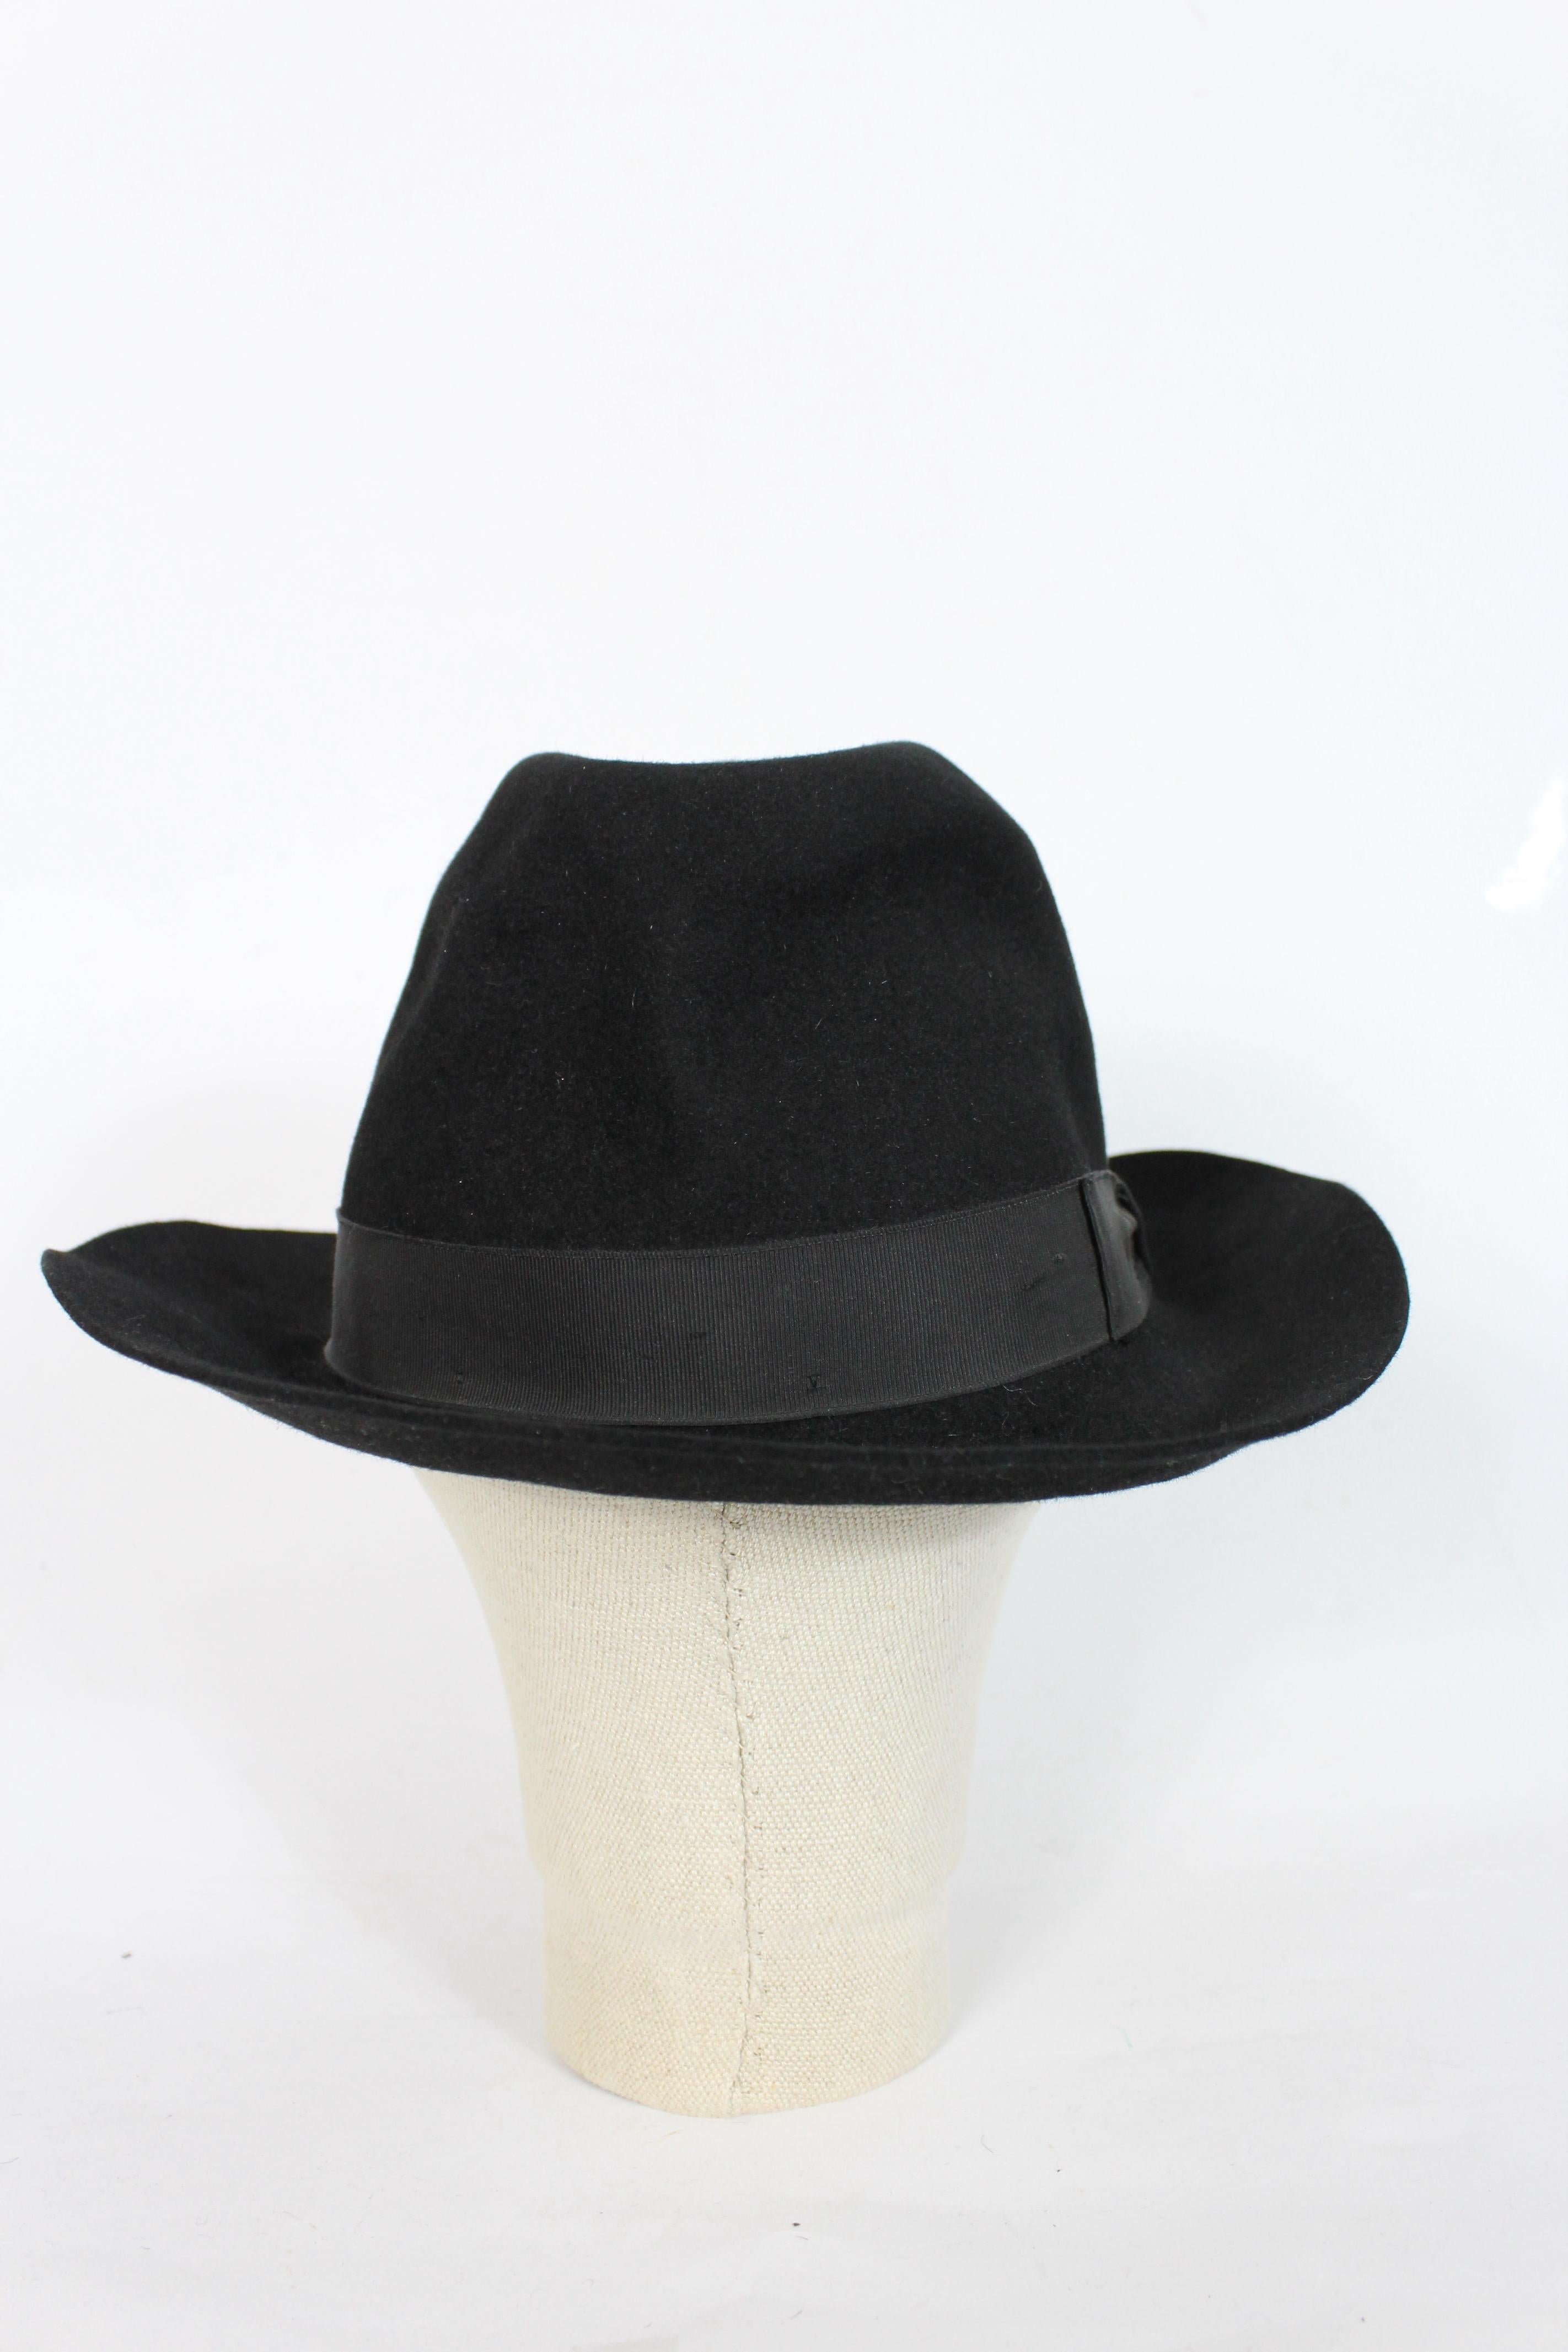 Borsalino Black Felt Fedora Hat In Excellent Condition In Brindisi, Bt